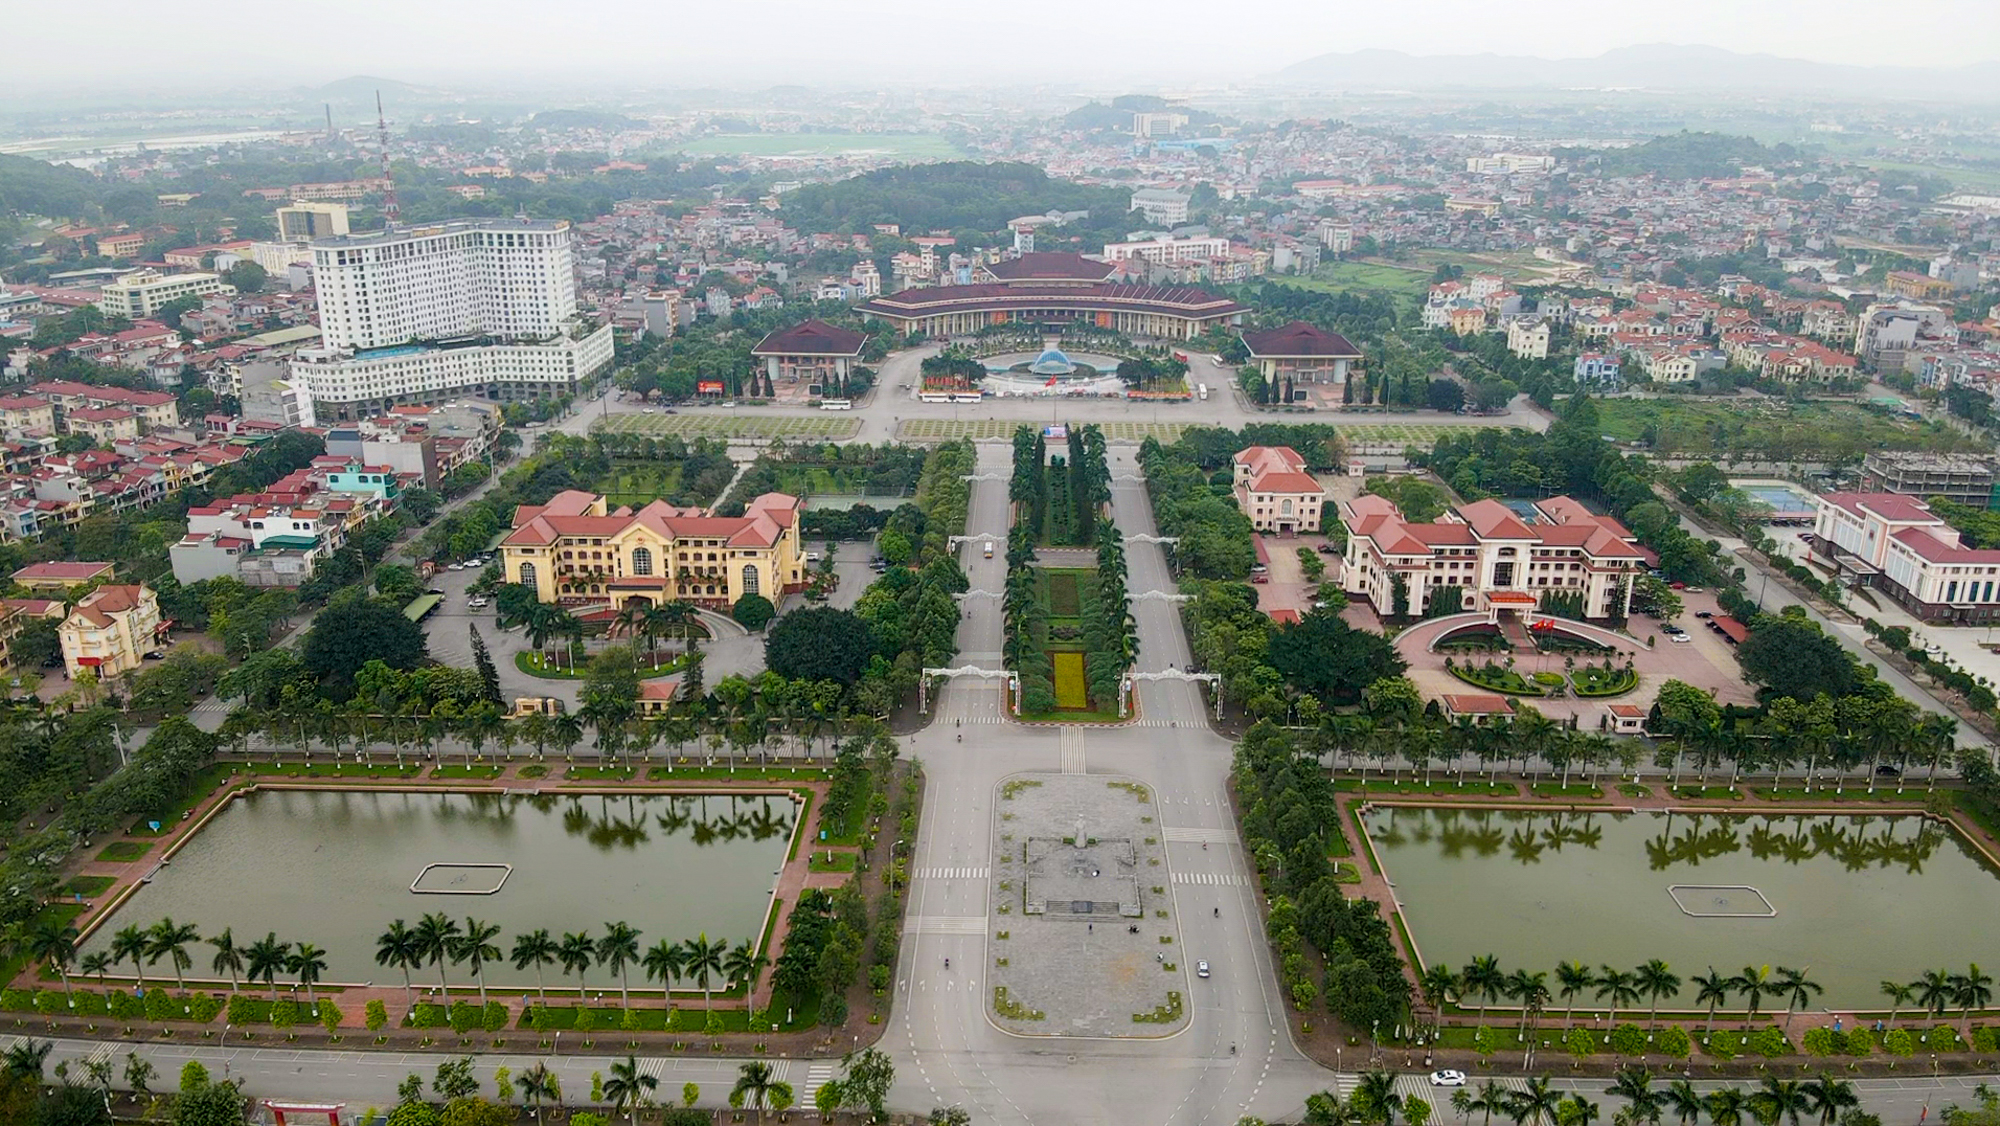 Cận cảnh khu hành chính tỉnh có mô hình kiến trúc độc đáo nhất Việt Nam - Ảnh 7.